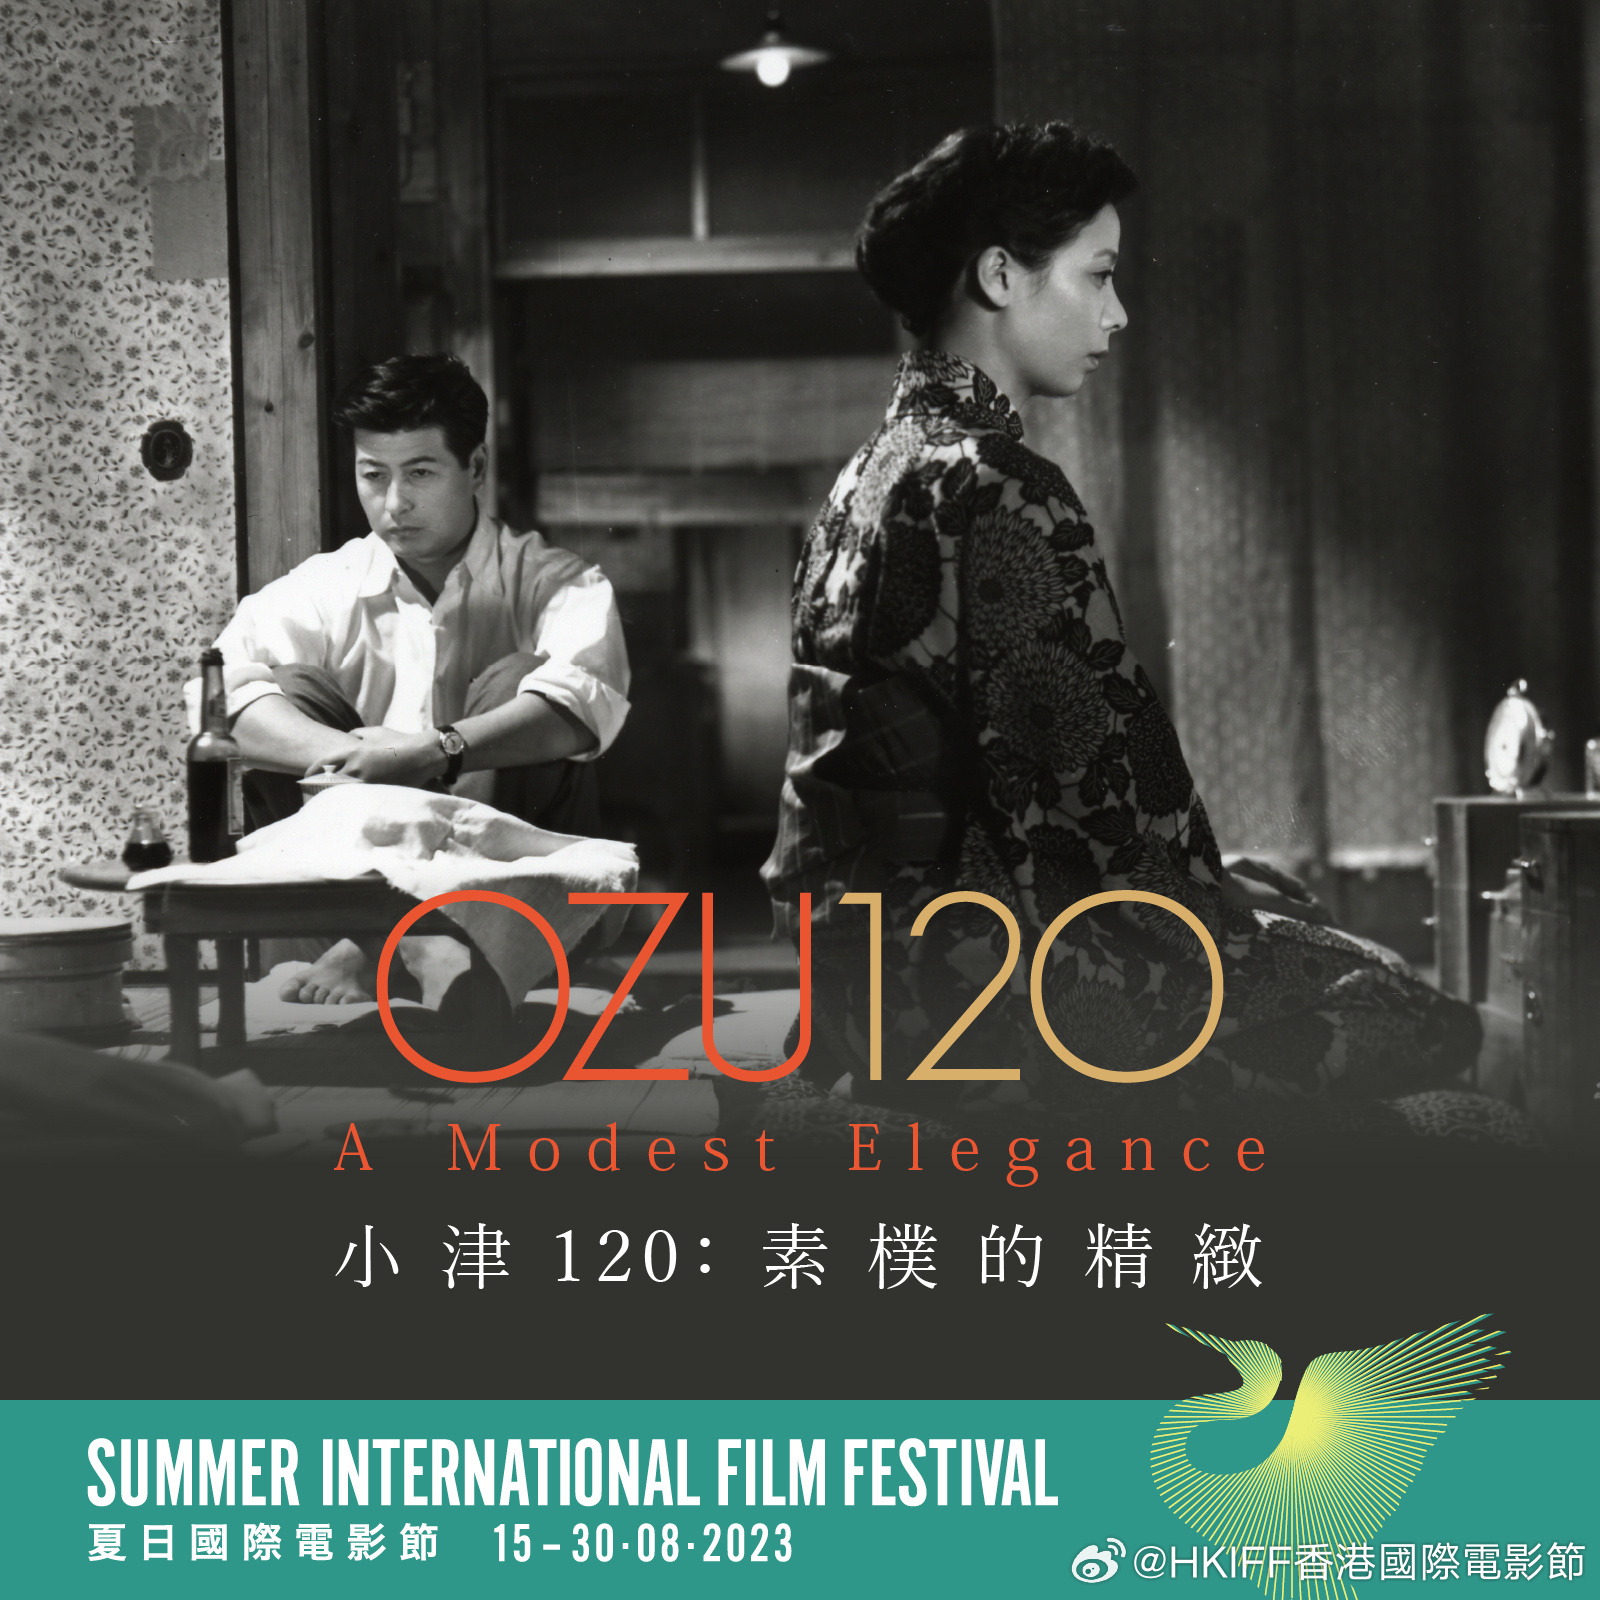 夏日国际电影节将举行 致敬电影大师小津安二郎